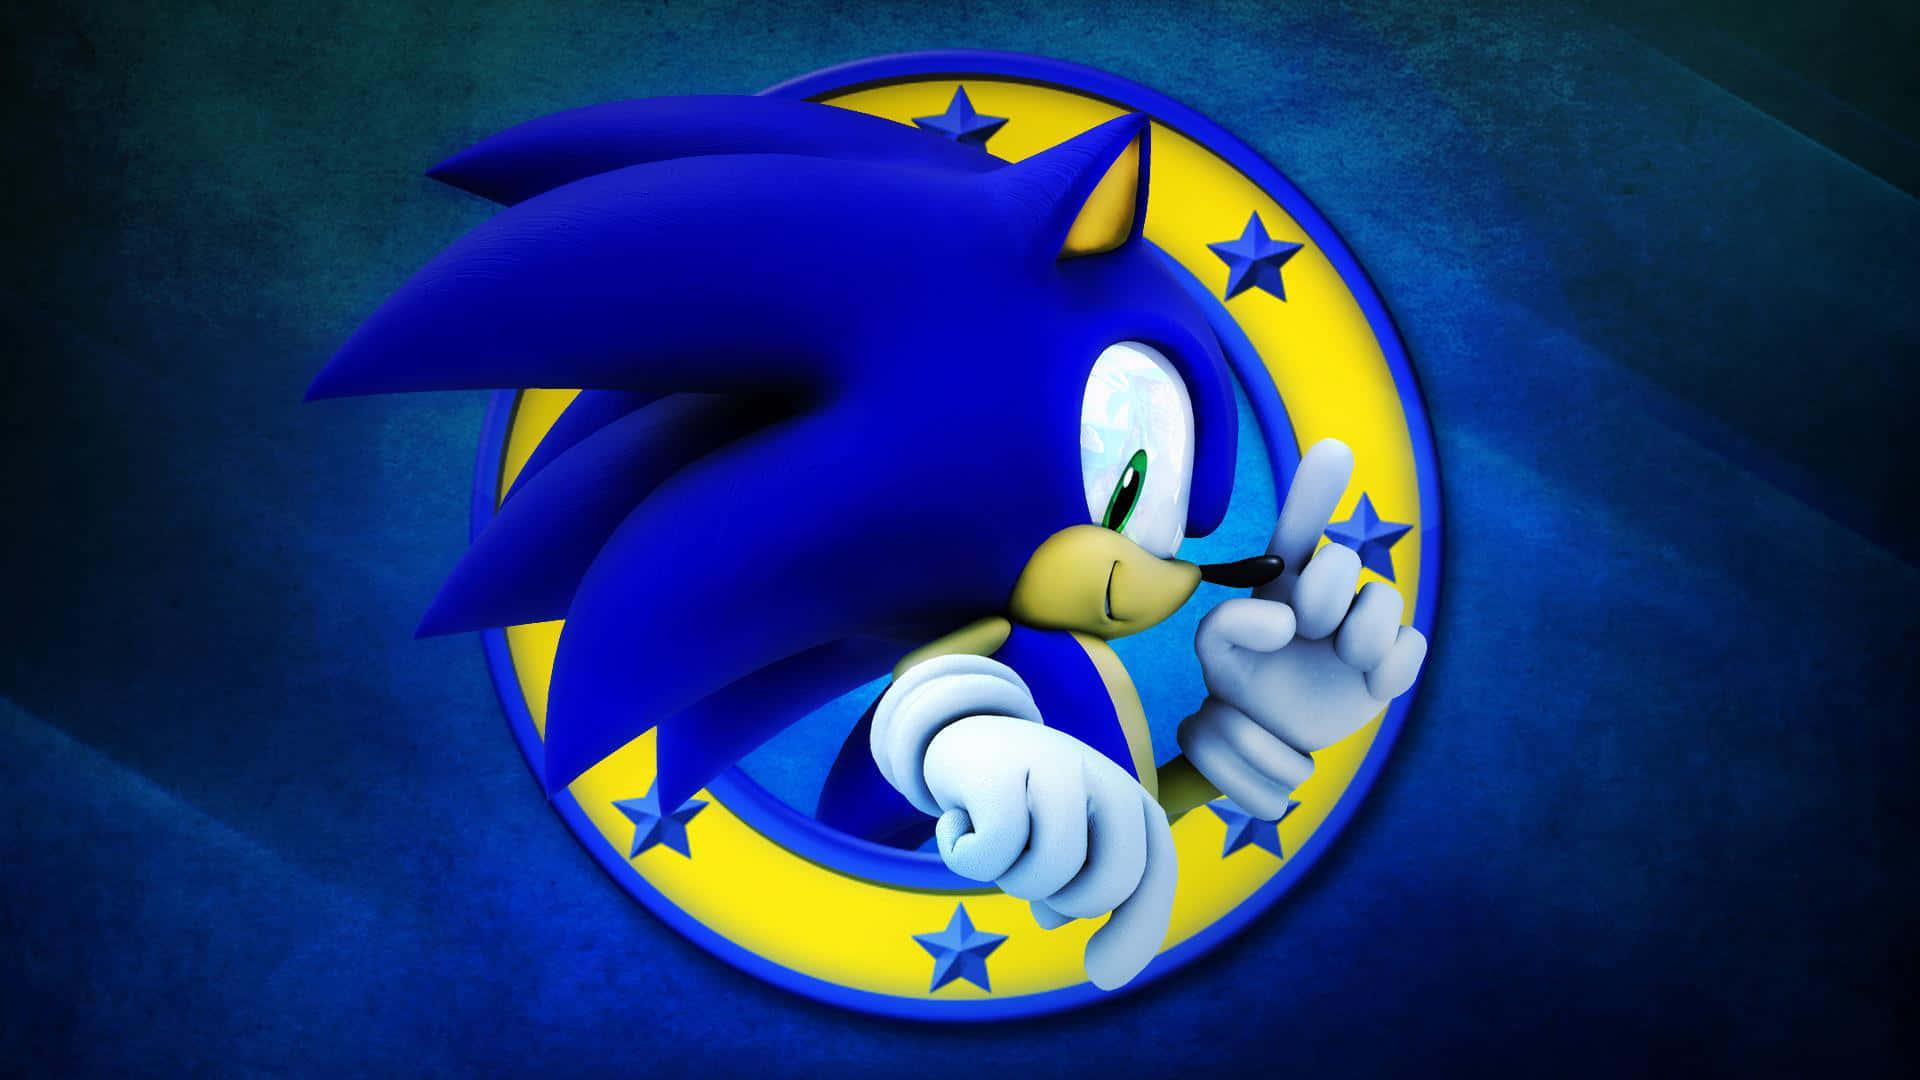 Sonicthe Hedgehog Logo Auf Blauem Hintergrund. Wallpaper